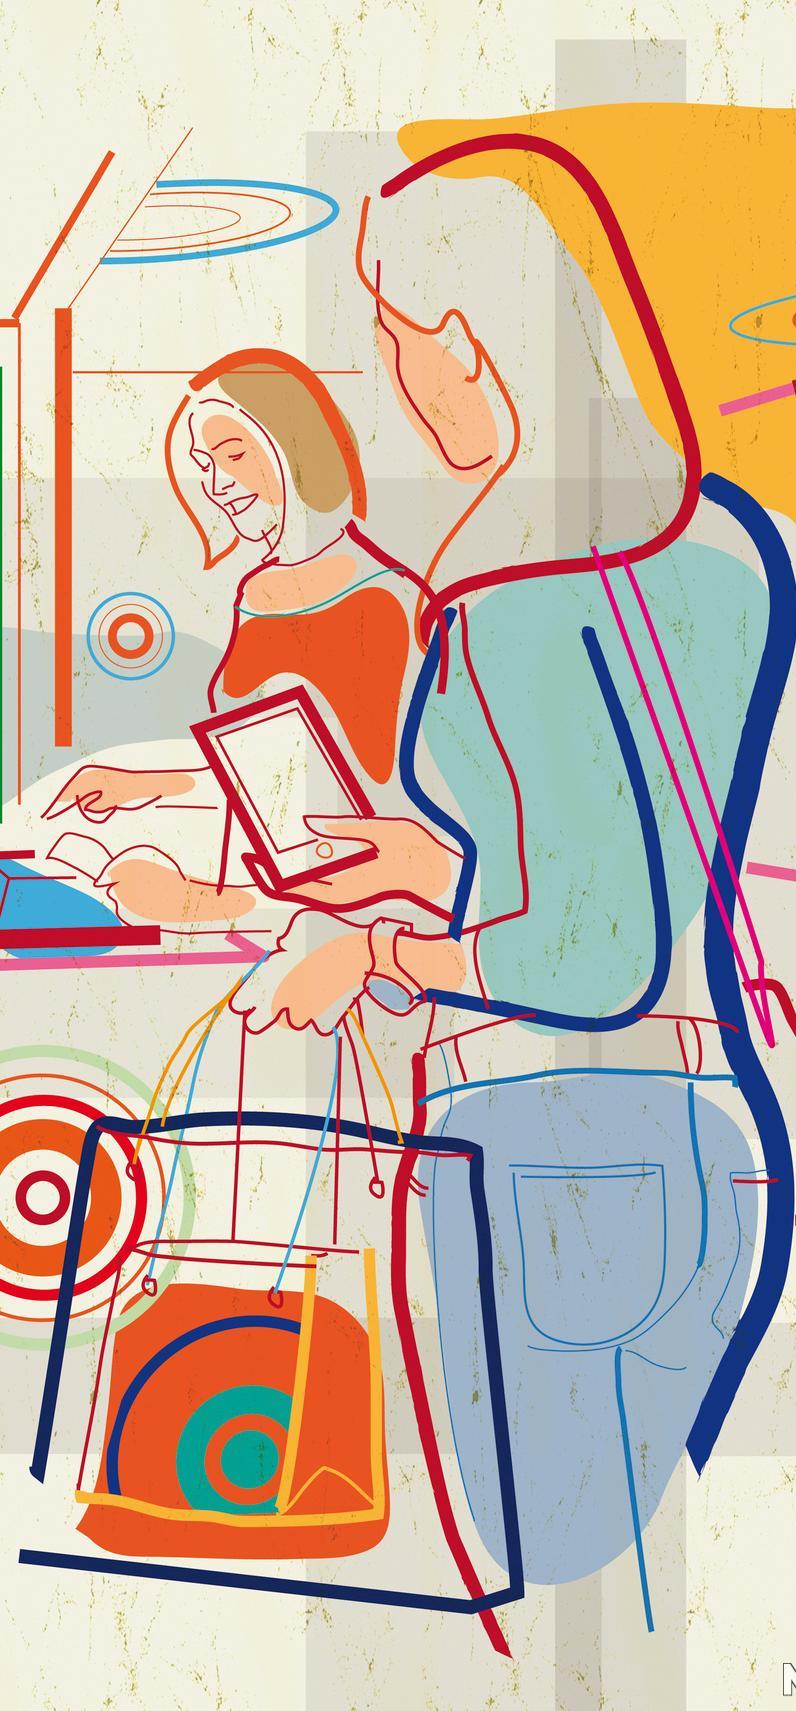 Kvinner som handlar med mobil. Illustrasjon.